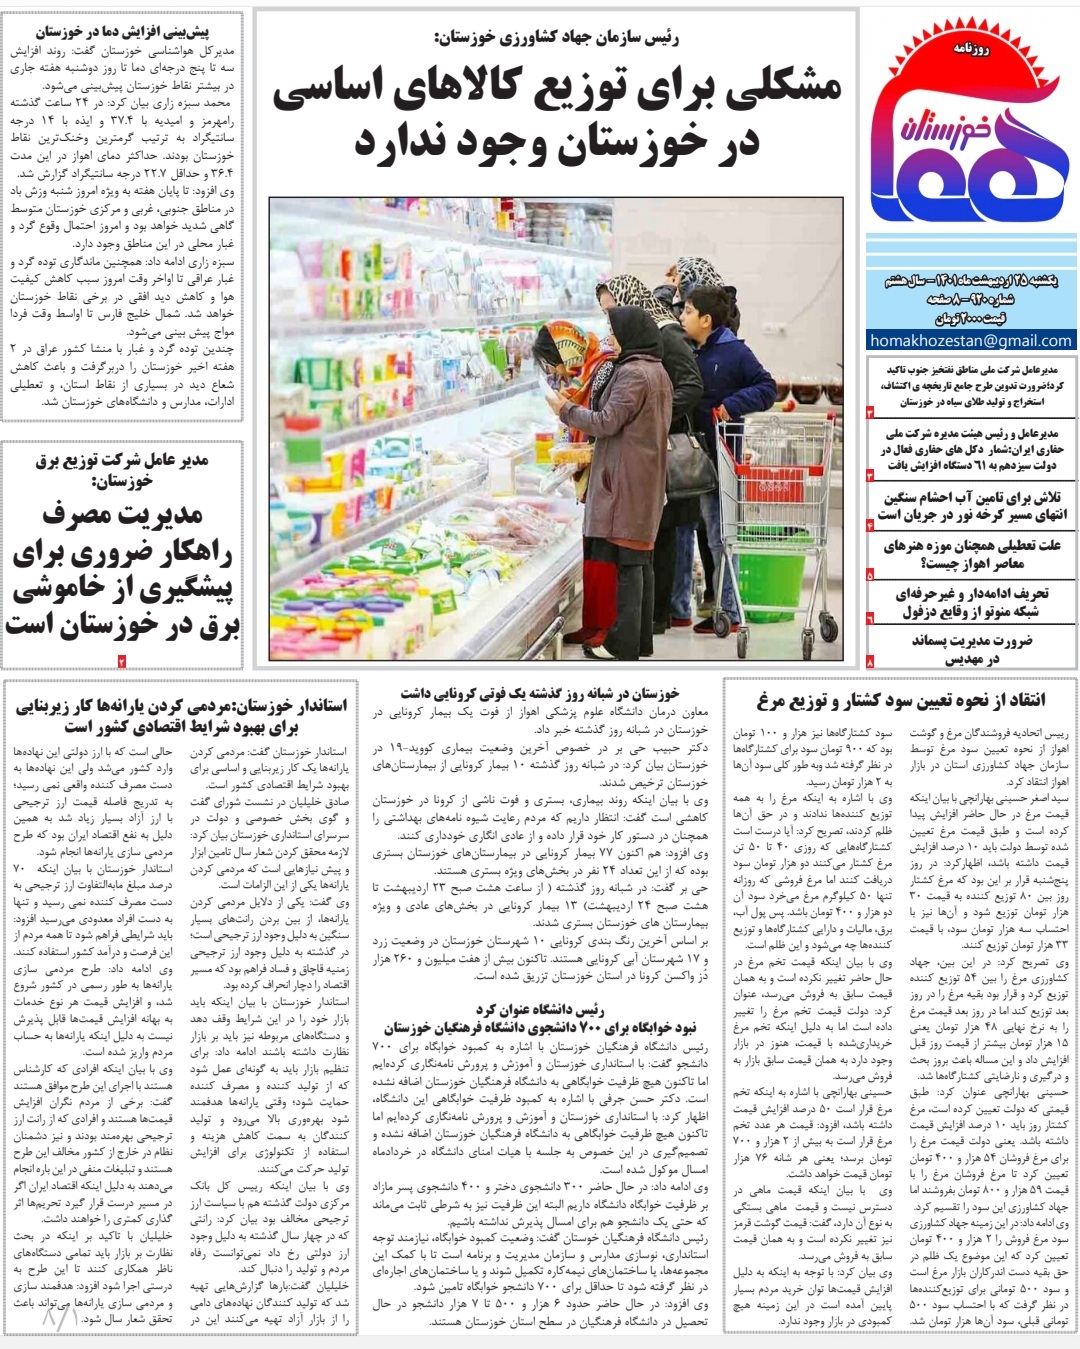 روزنامه هما خوزستان شماره ۹۲۰ به تاریخ يکشنبه ۲۵ اردیبهشت ماه ۱۴۰۱